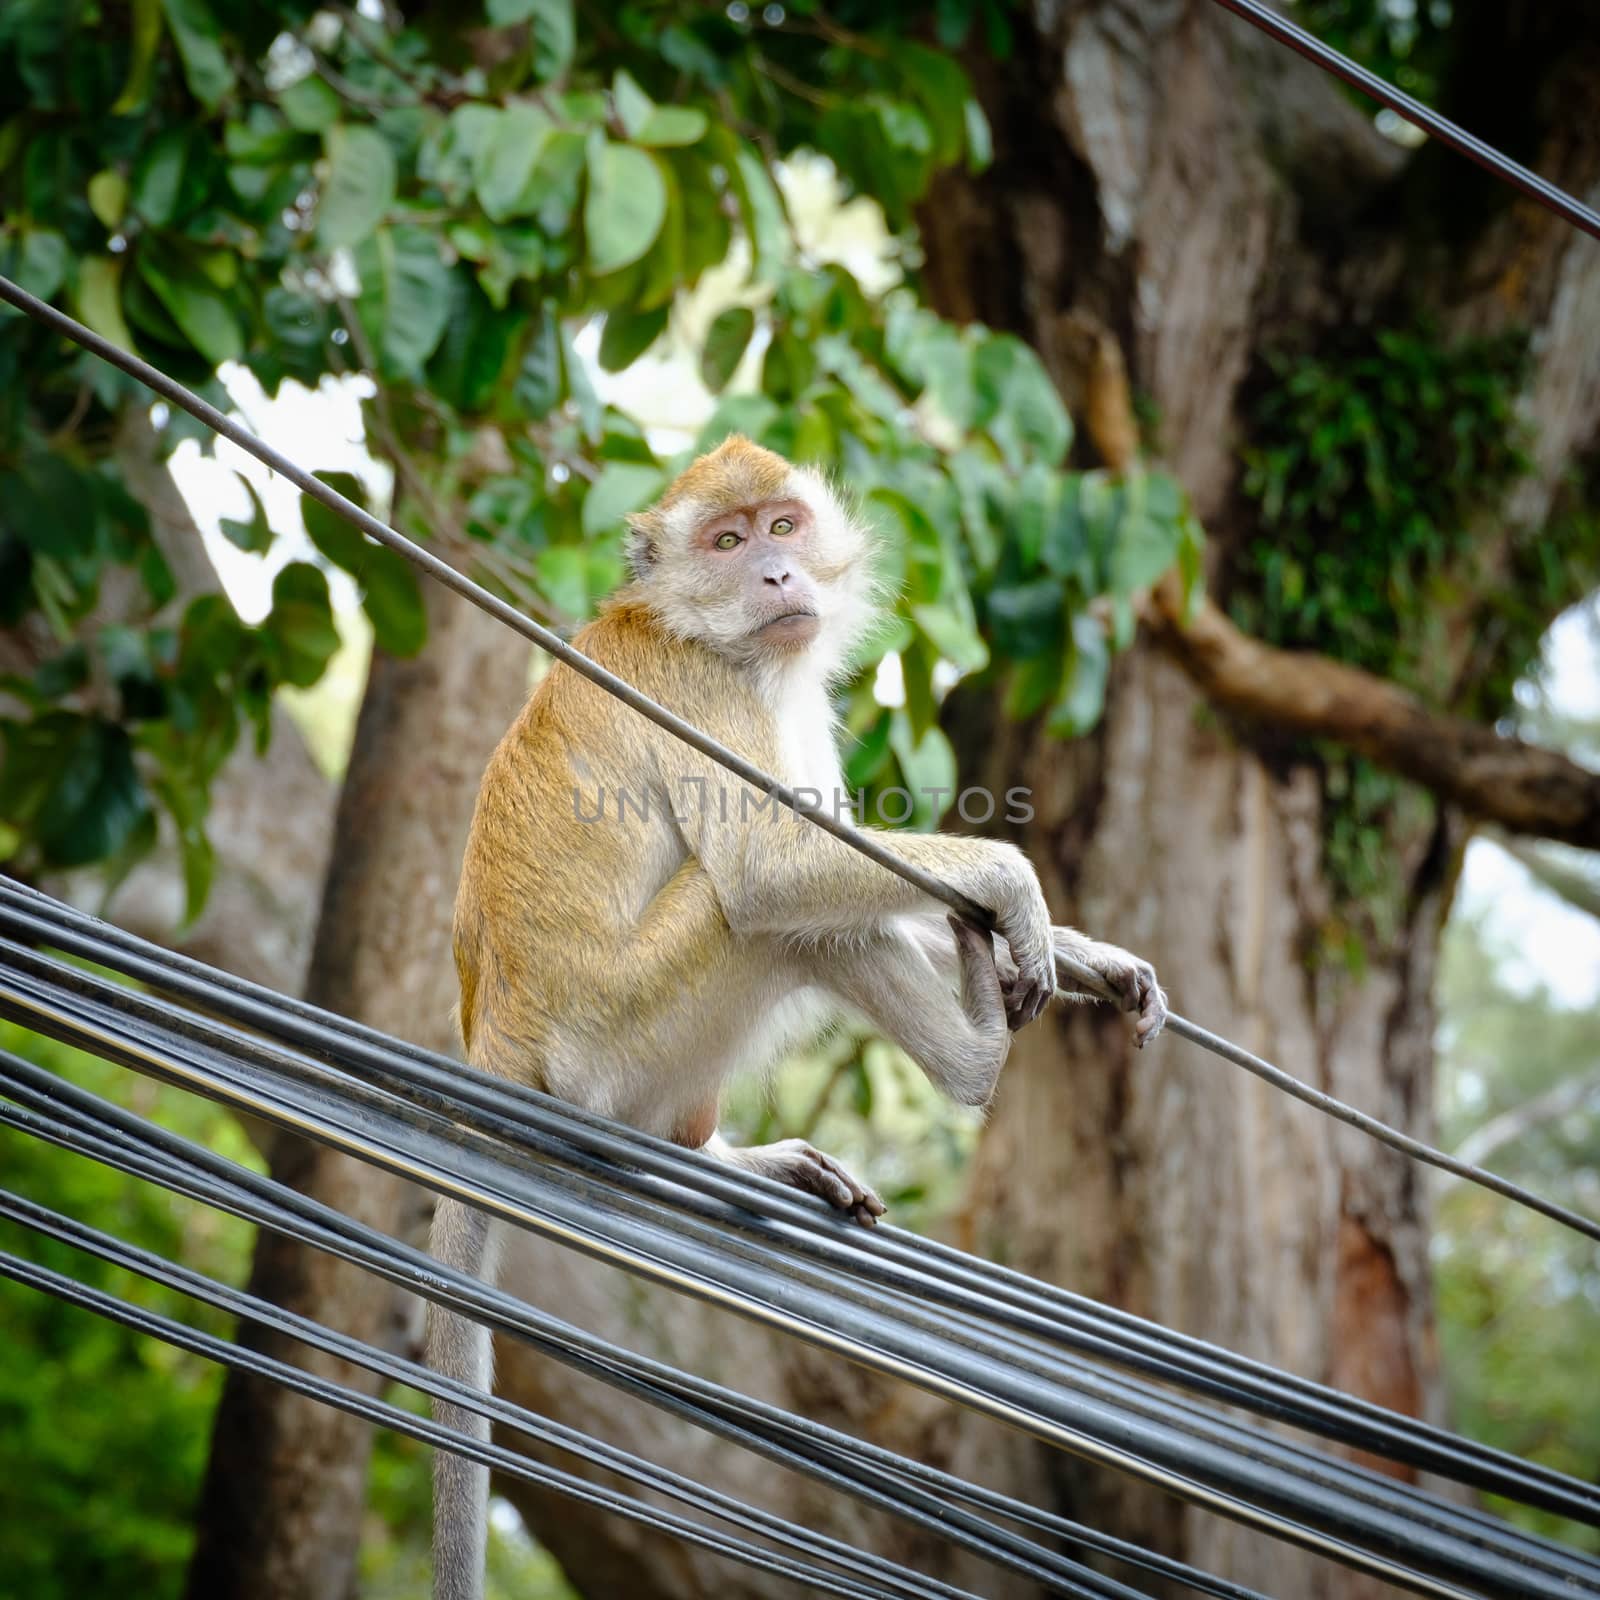 Monkey sitting on a pole, Look forward